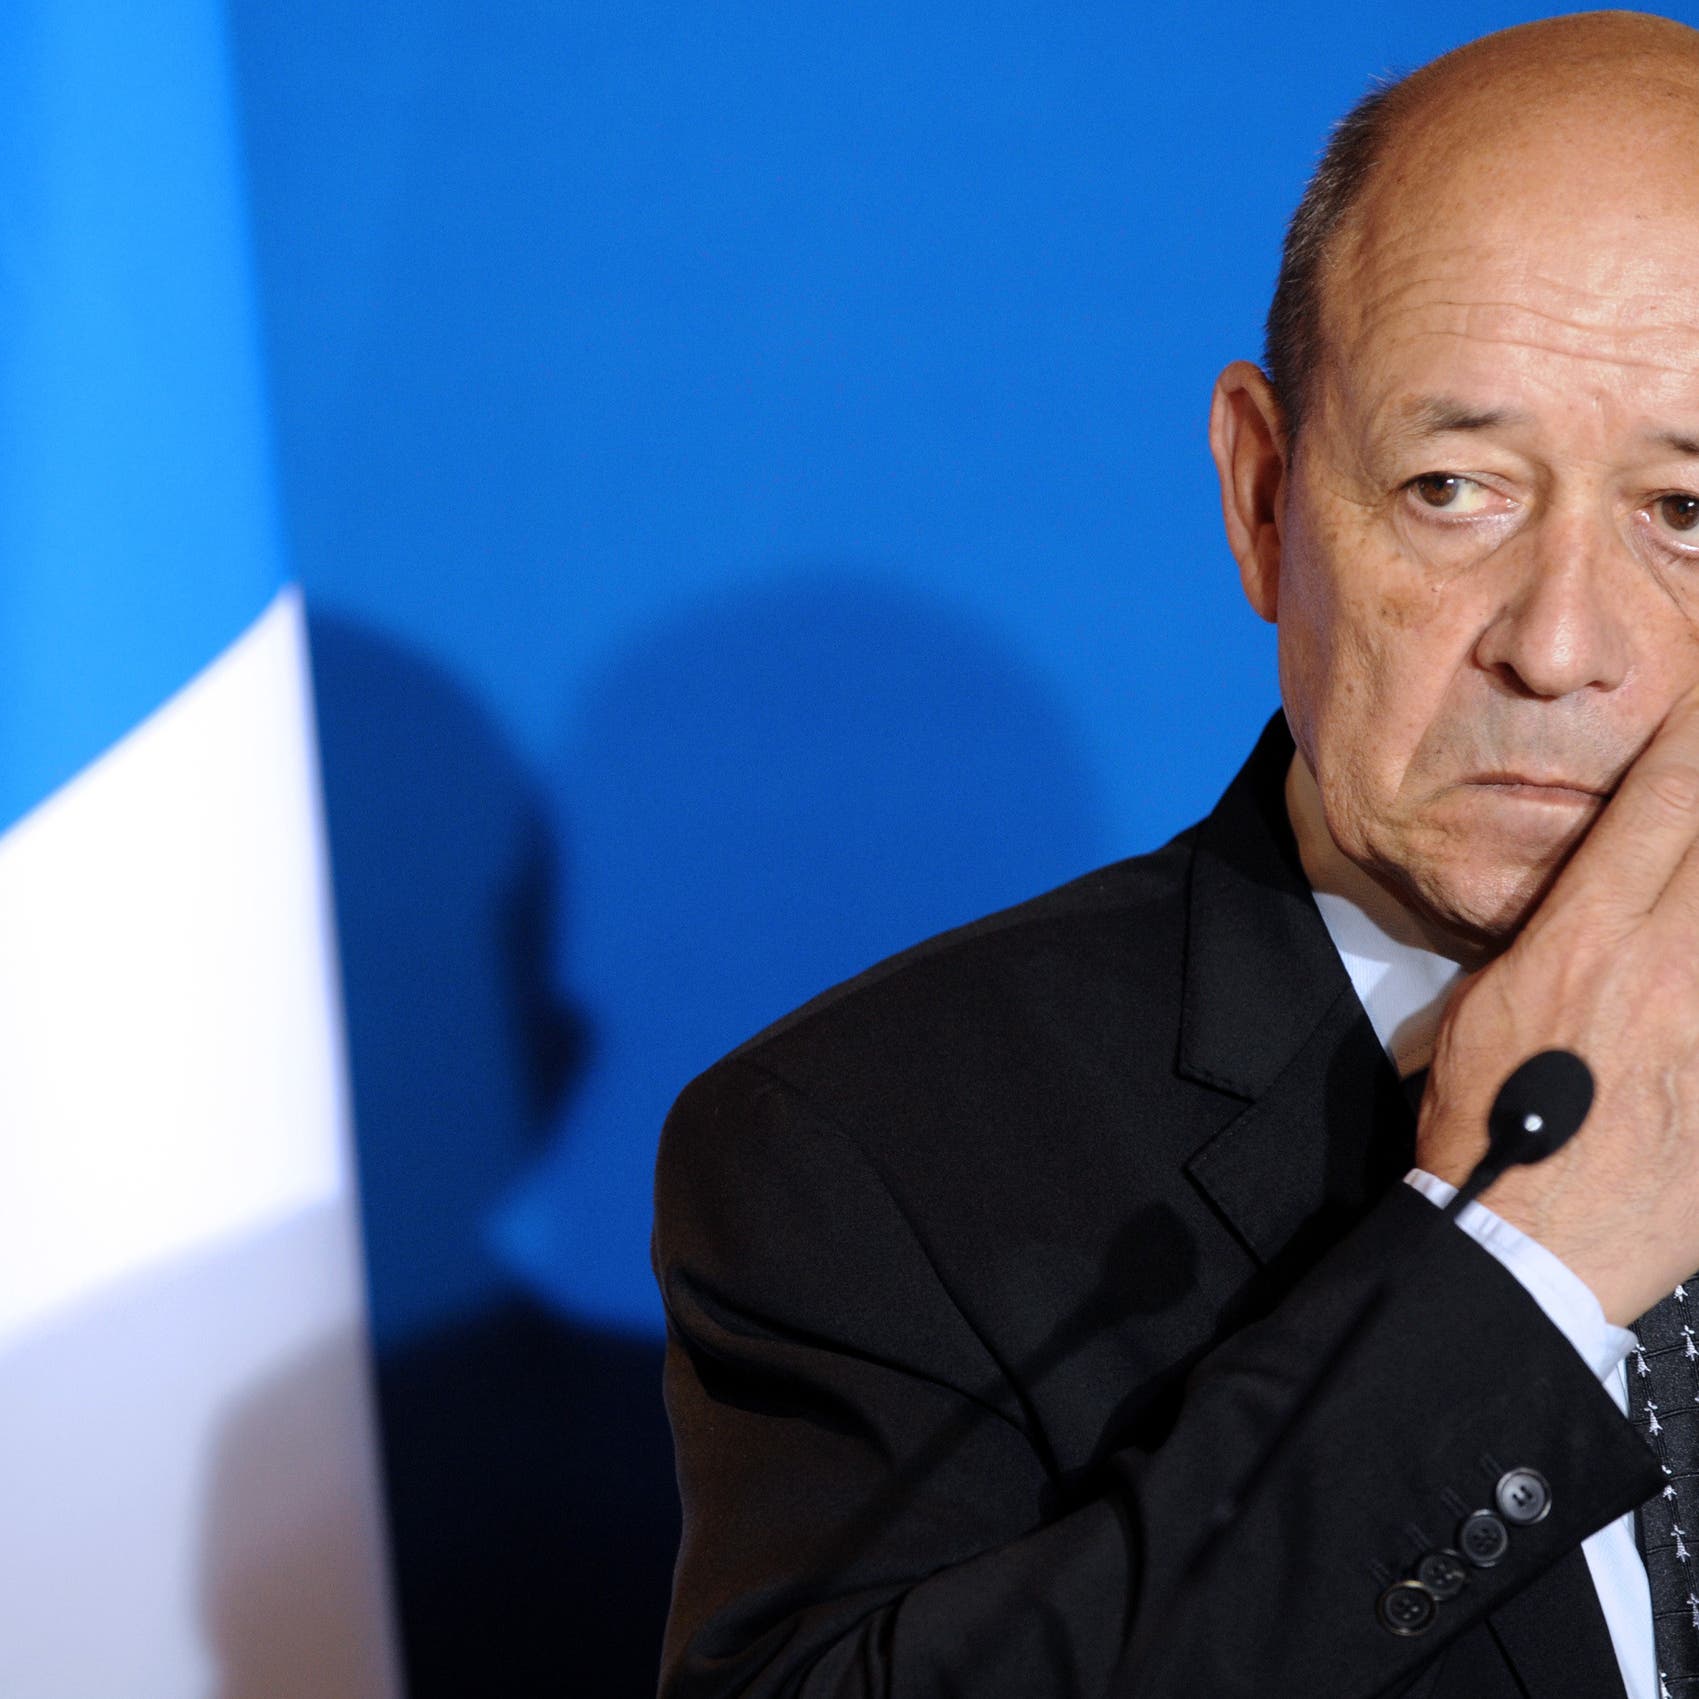 وزير فرنسي حزين على لبنان.. وناشطون غاضبون: "ألا تخجلون؟"